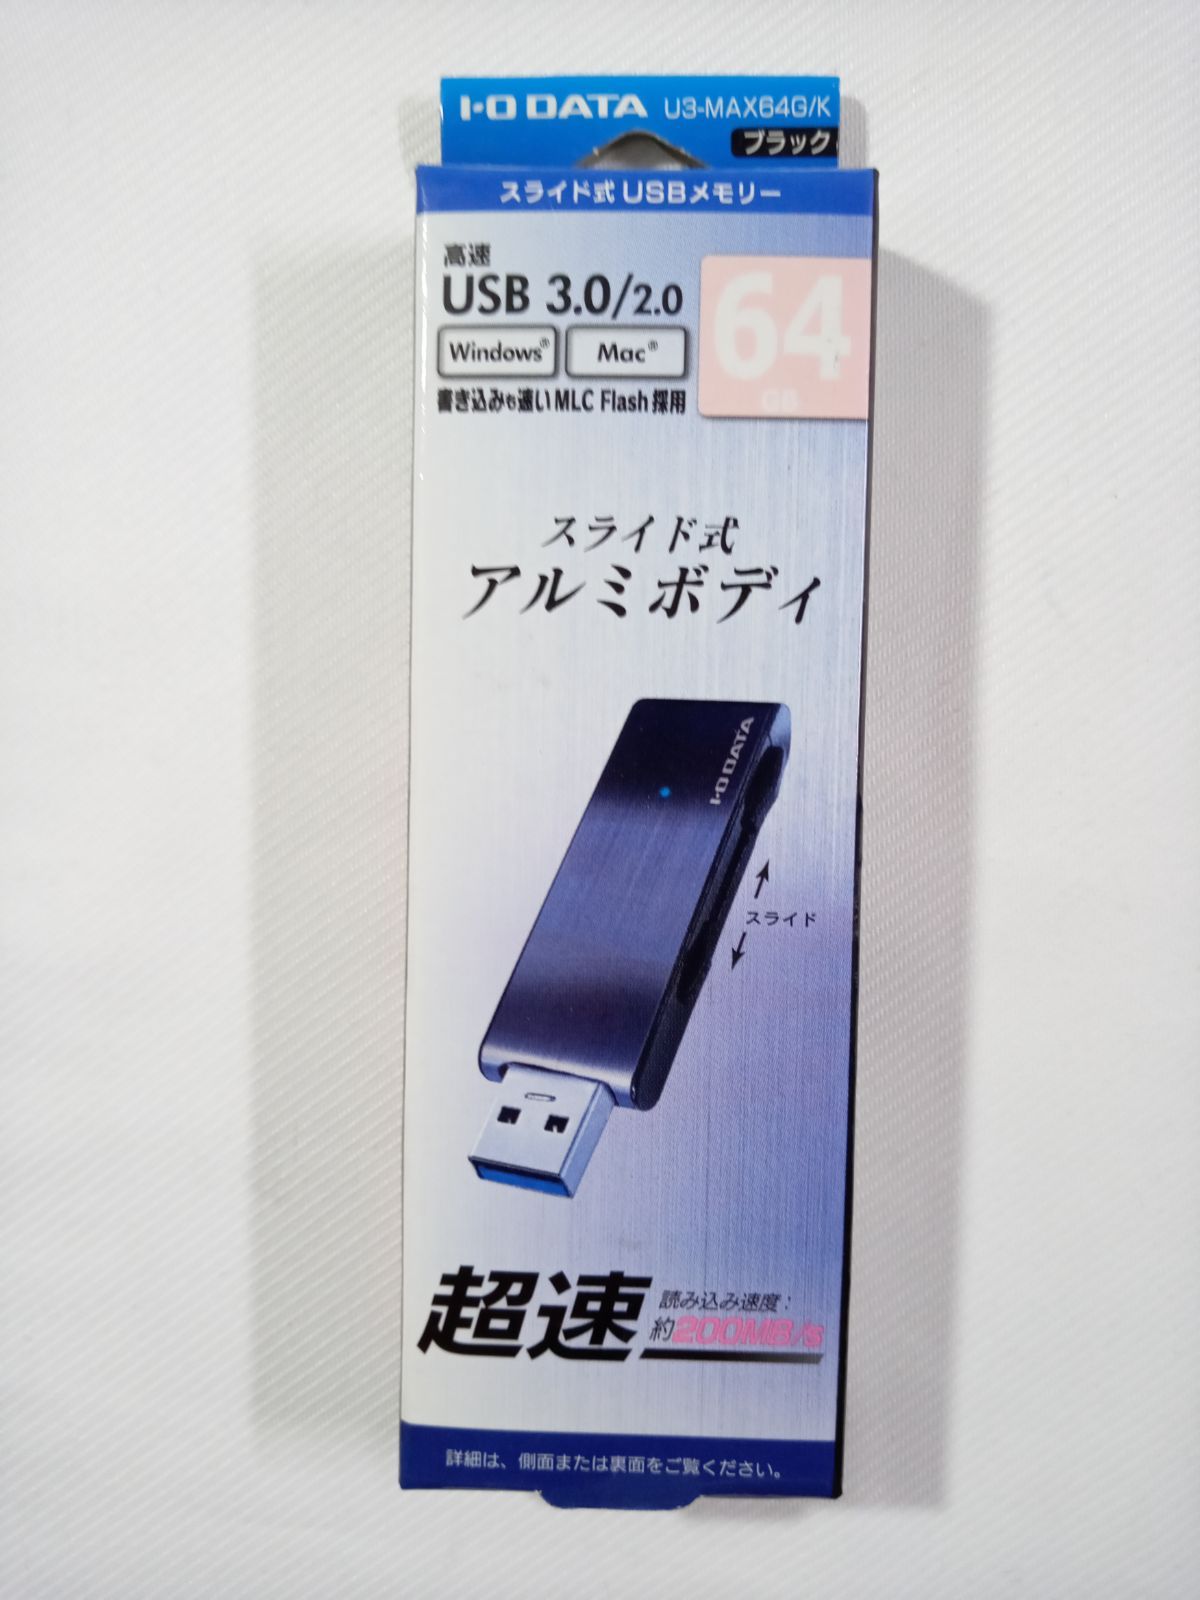 セール新品】 USBメモリ アイオーデータ U3-MAX64G/K [USB 3.0対応超